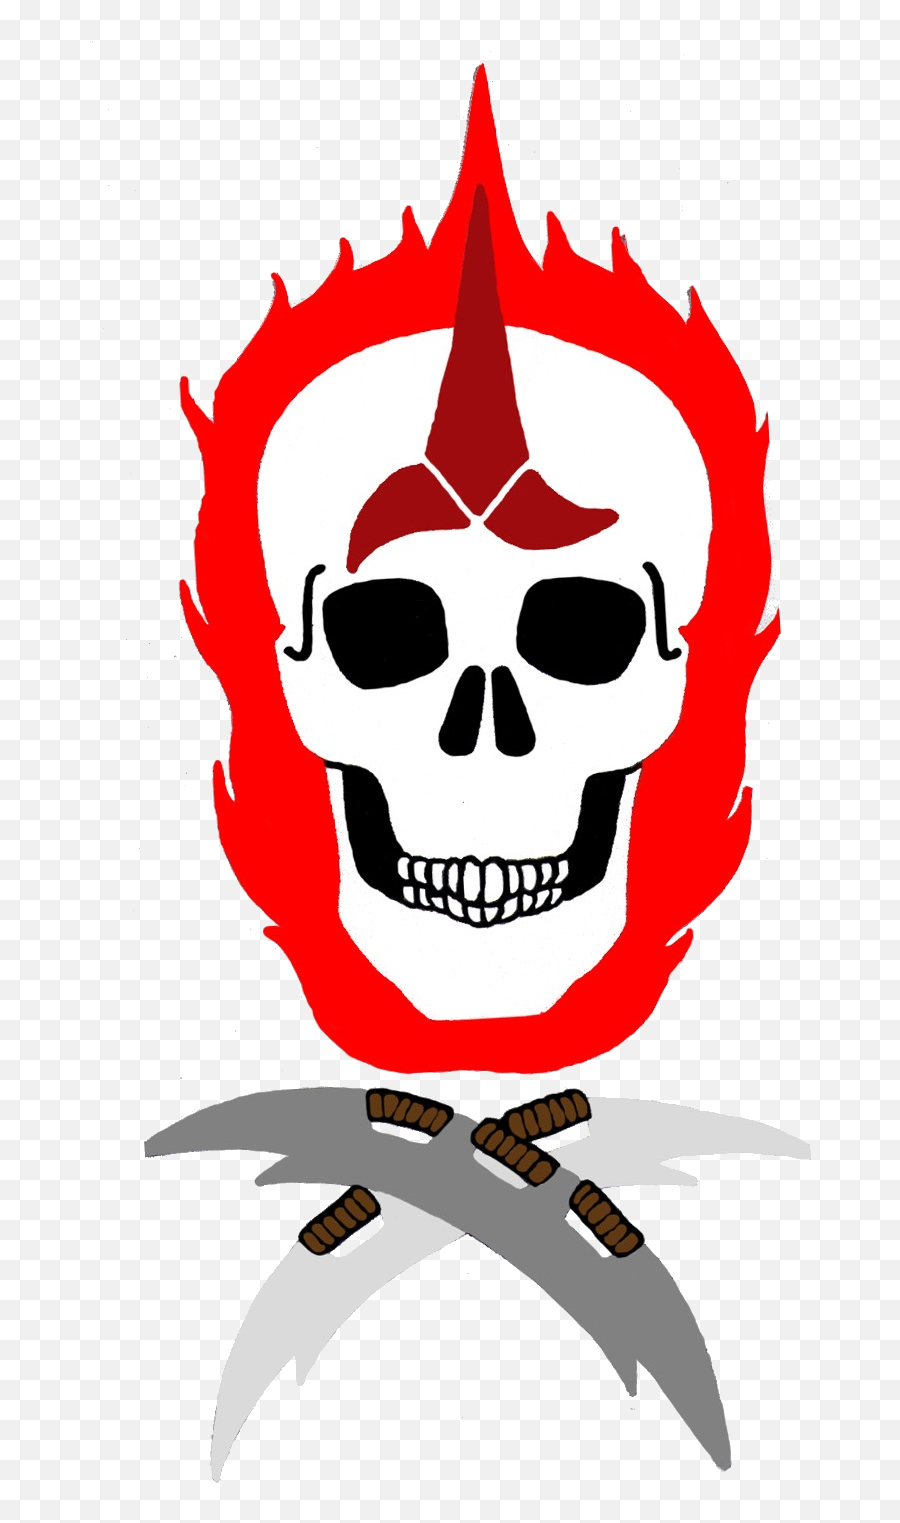 First Annual Death - Skull Emoji,Death Skull Emoji